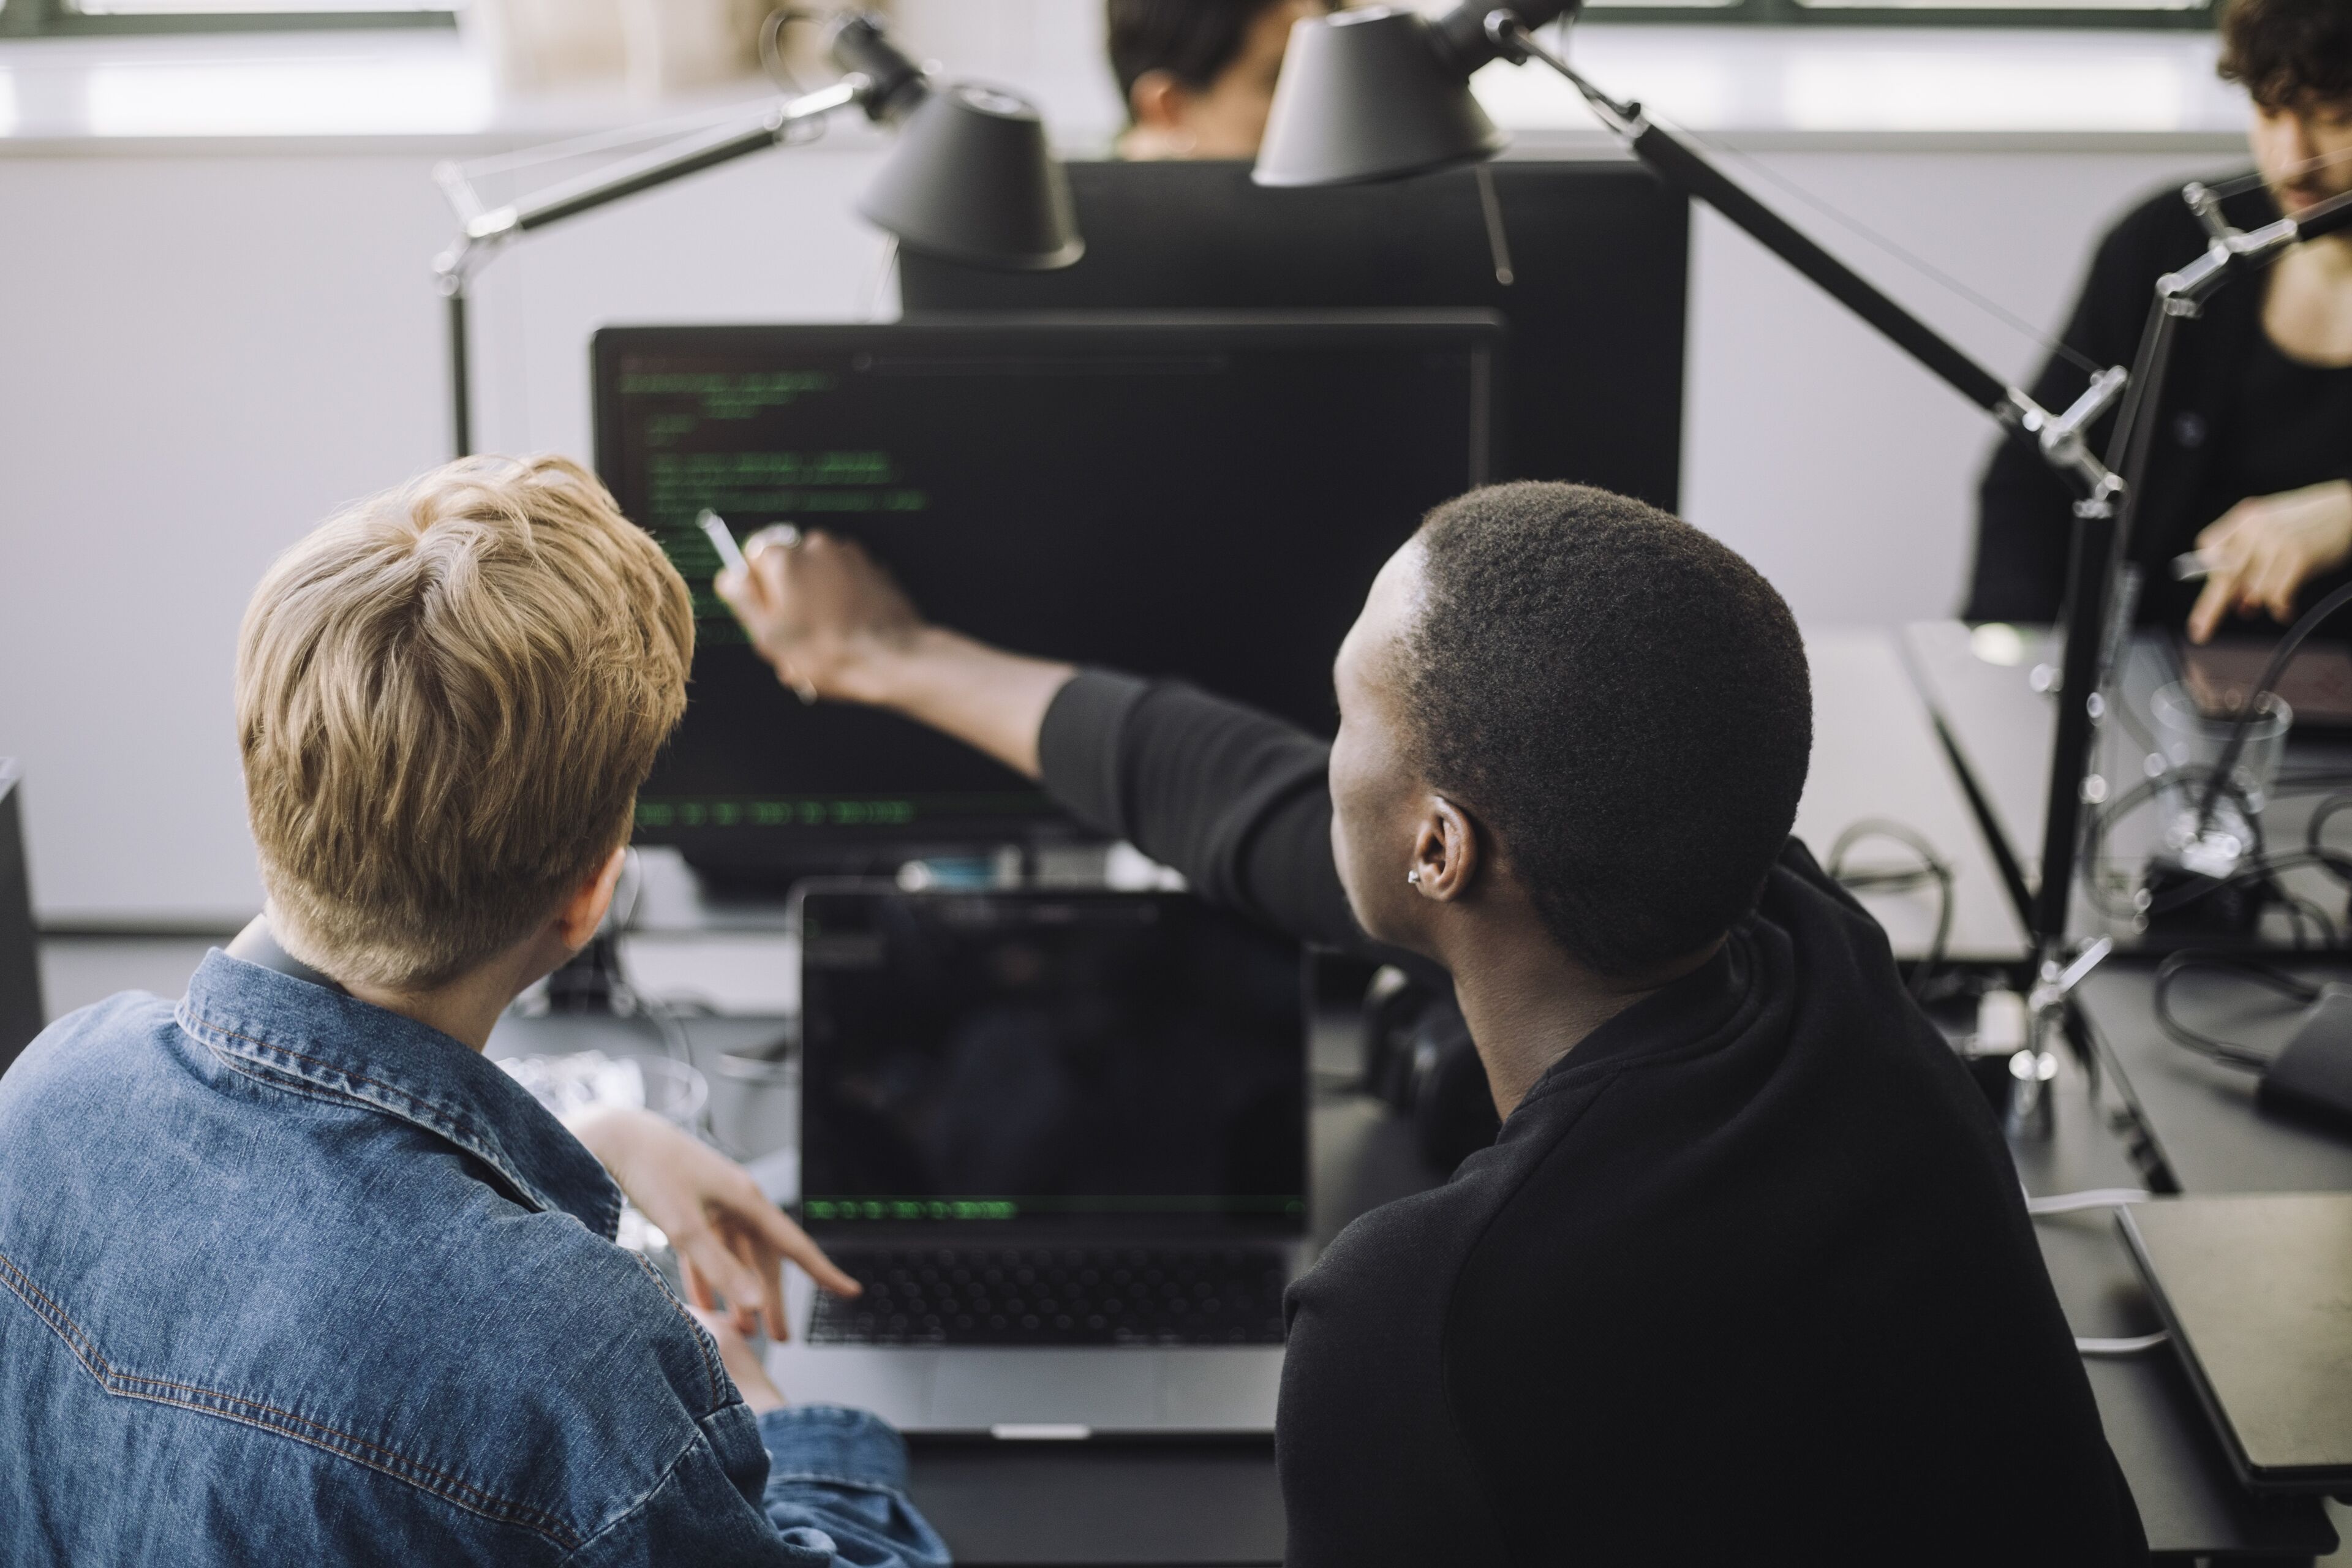 Dos personas participando en una tarea de programación colaborativa, una señalando la pantalla de un ordenador en una oficina.